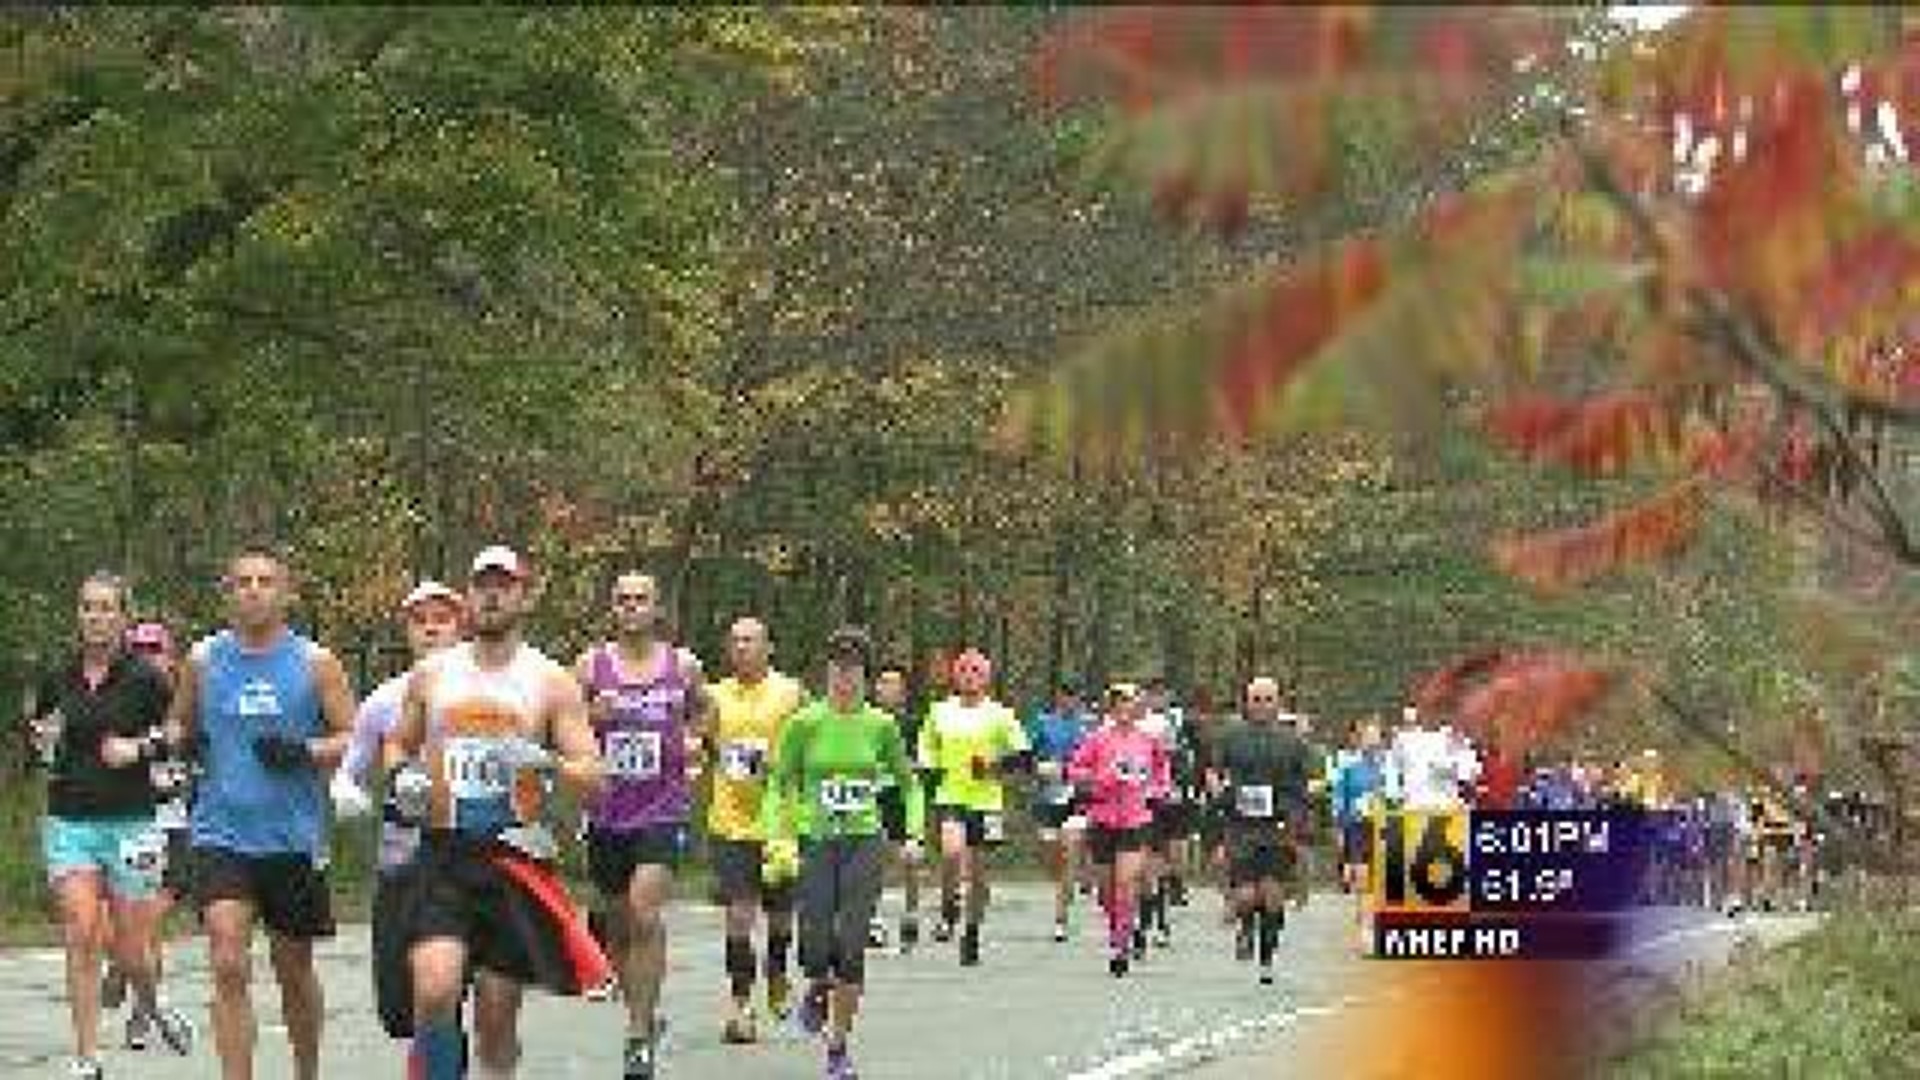 Thousands Run in Steamtown Marathon